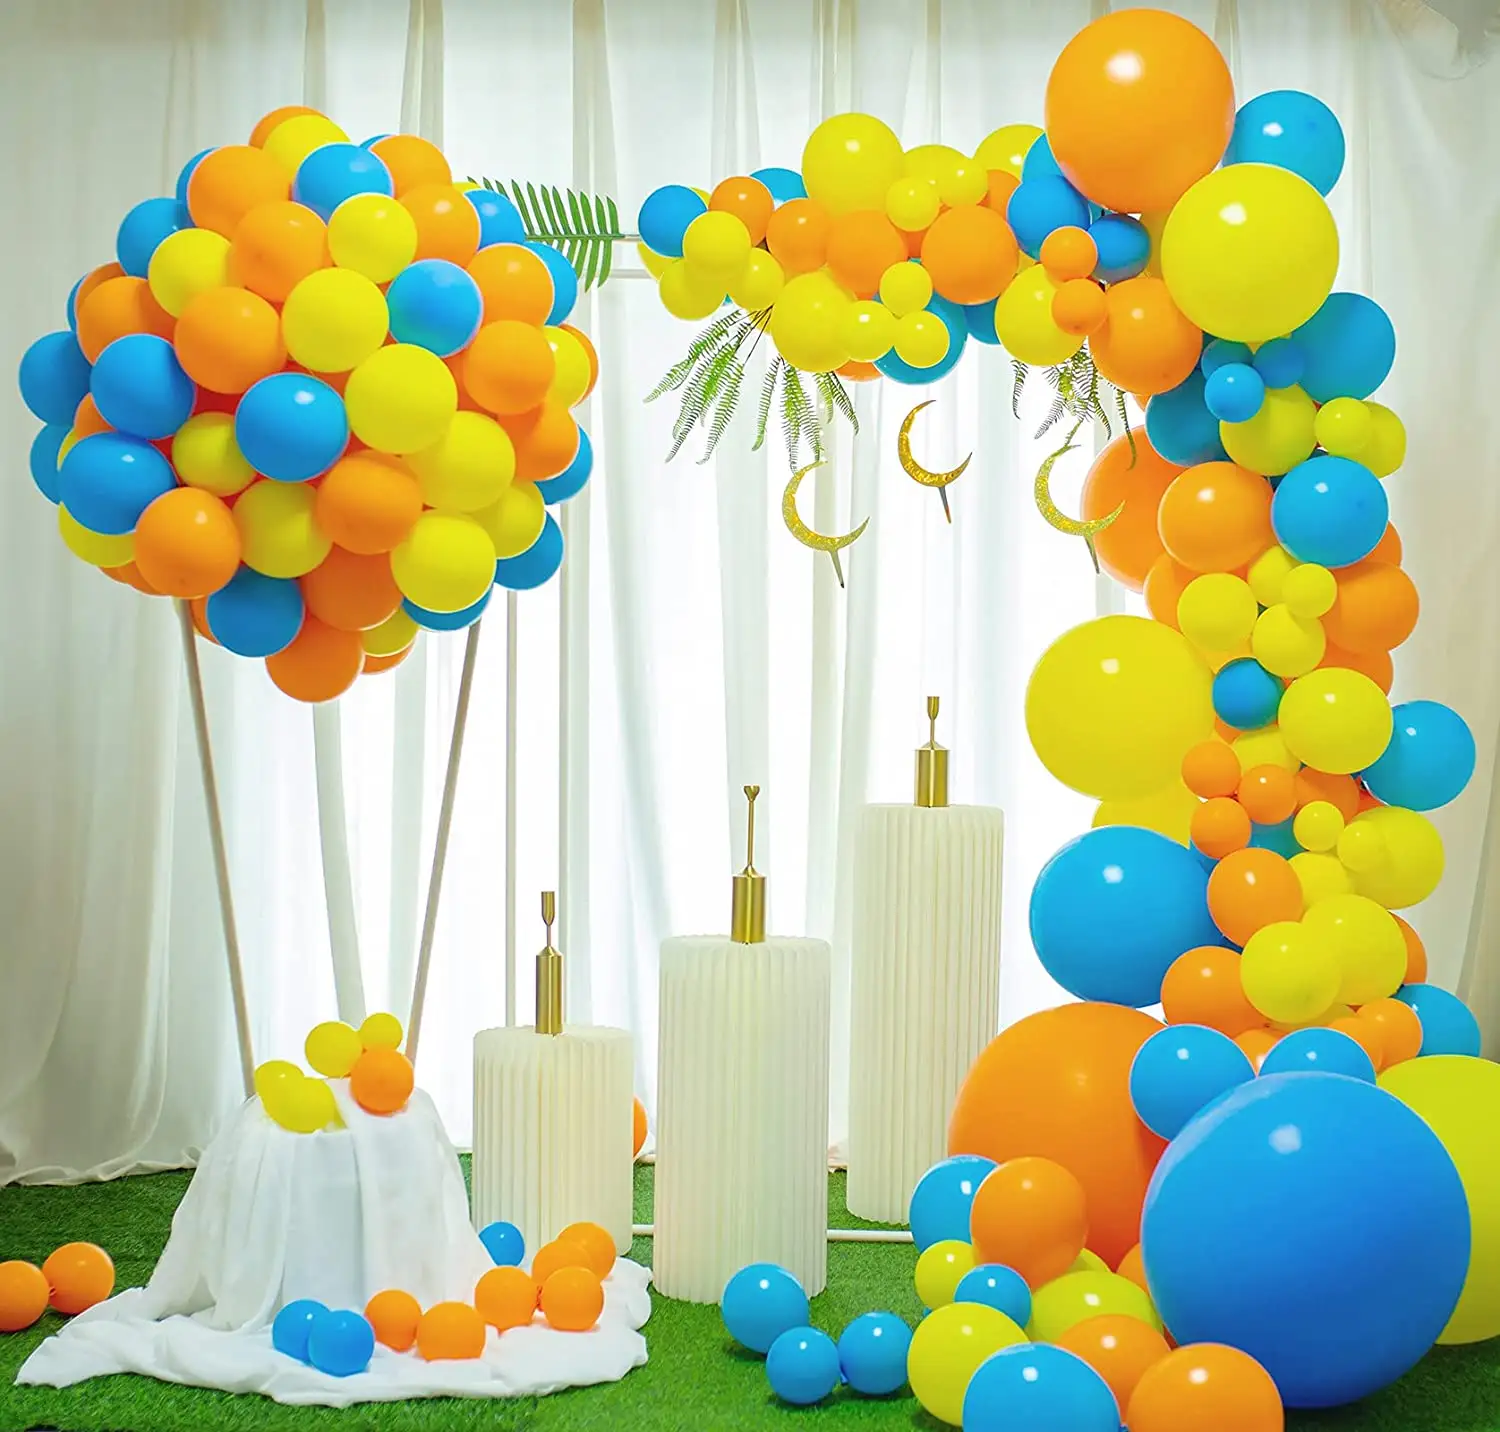 Kit ghirlanda di palloncini per feste fai da te 126 pezzi Kit arco di palloncini giallo arancione e blu decorazione per anniversario di laurea di compleanno di nozze